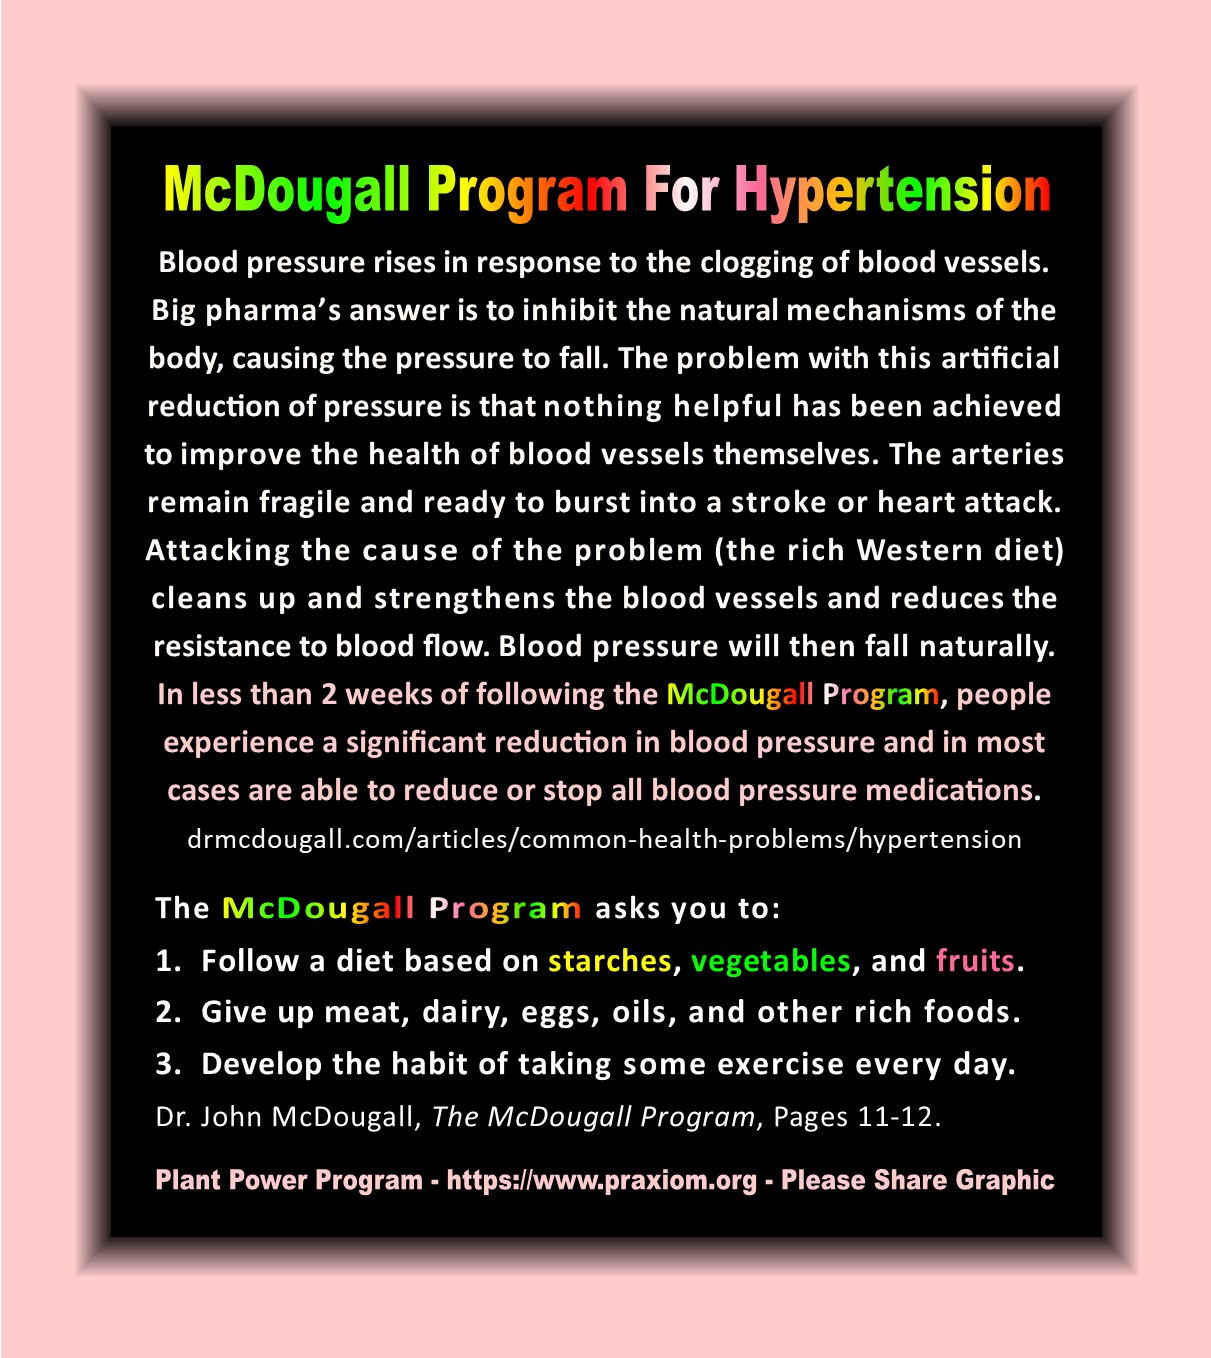 The McDougall Program for Hypertension